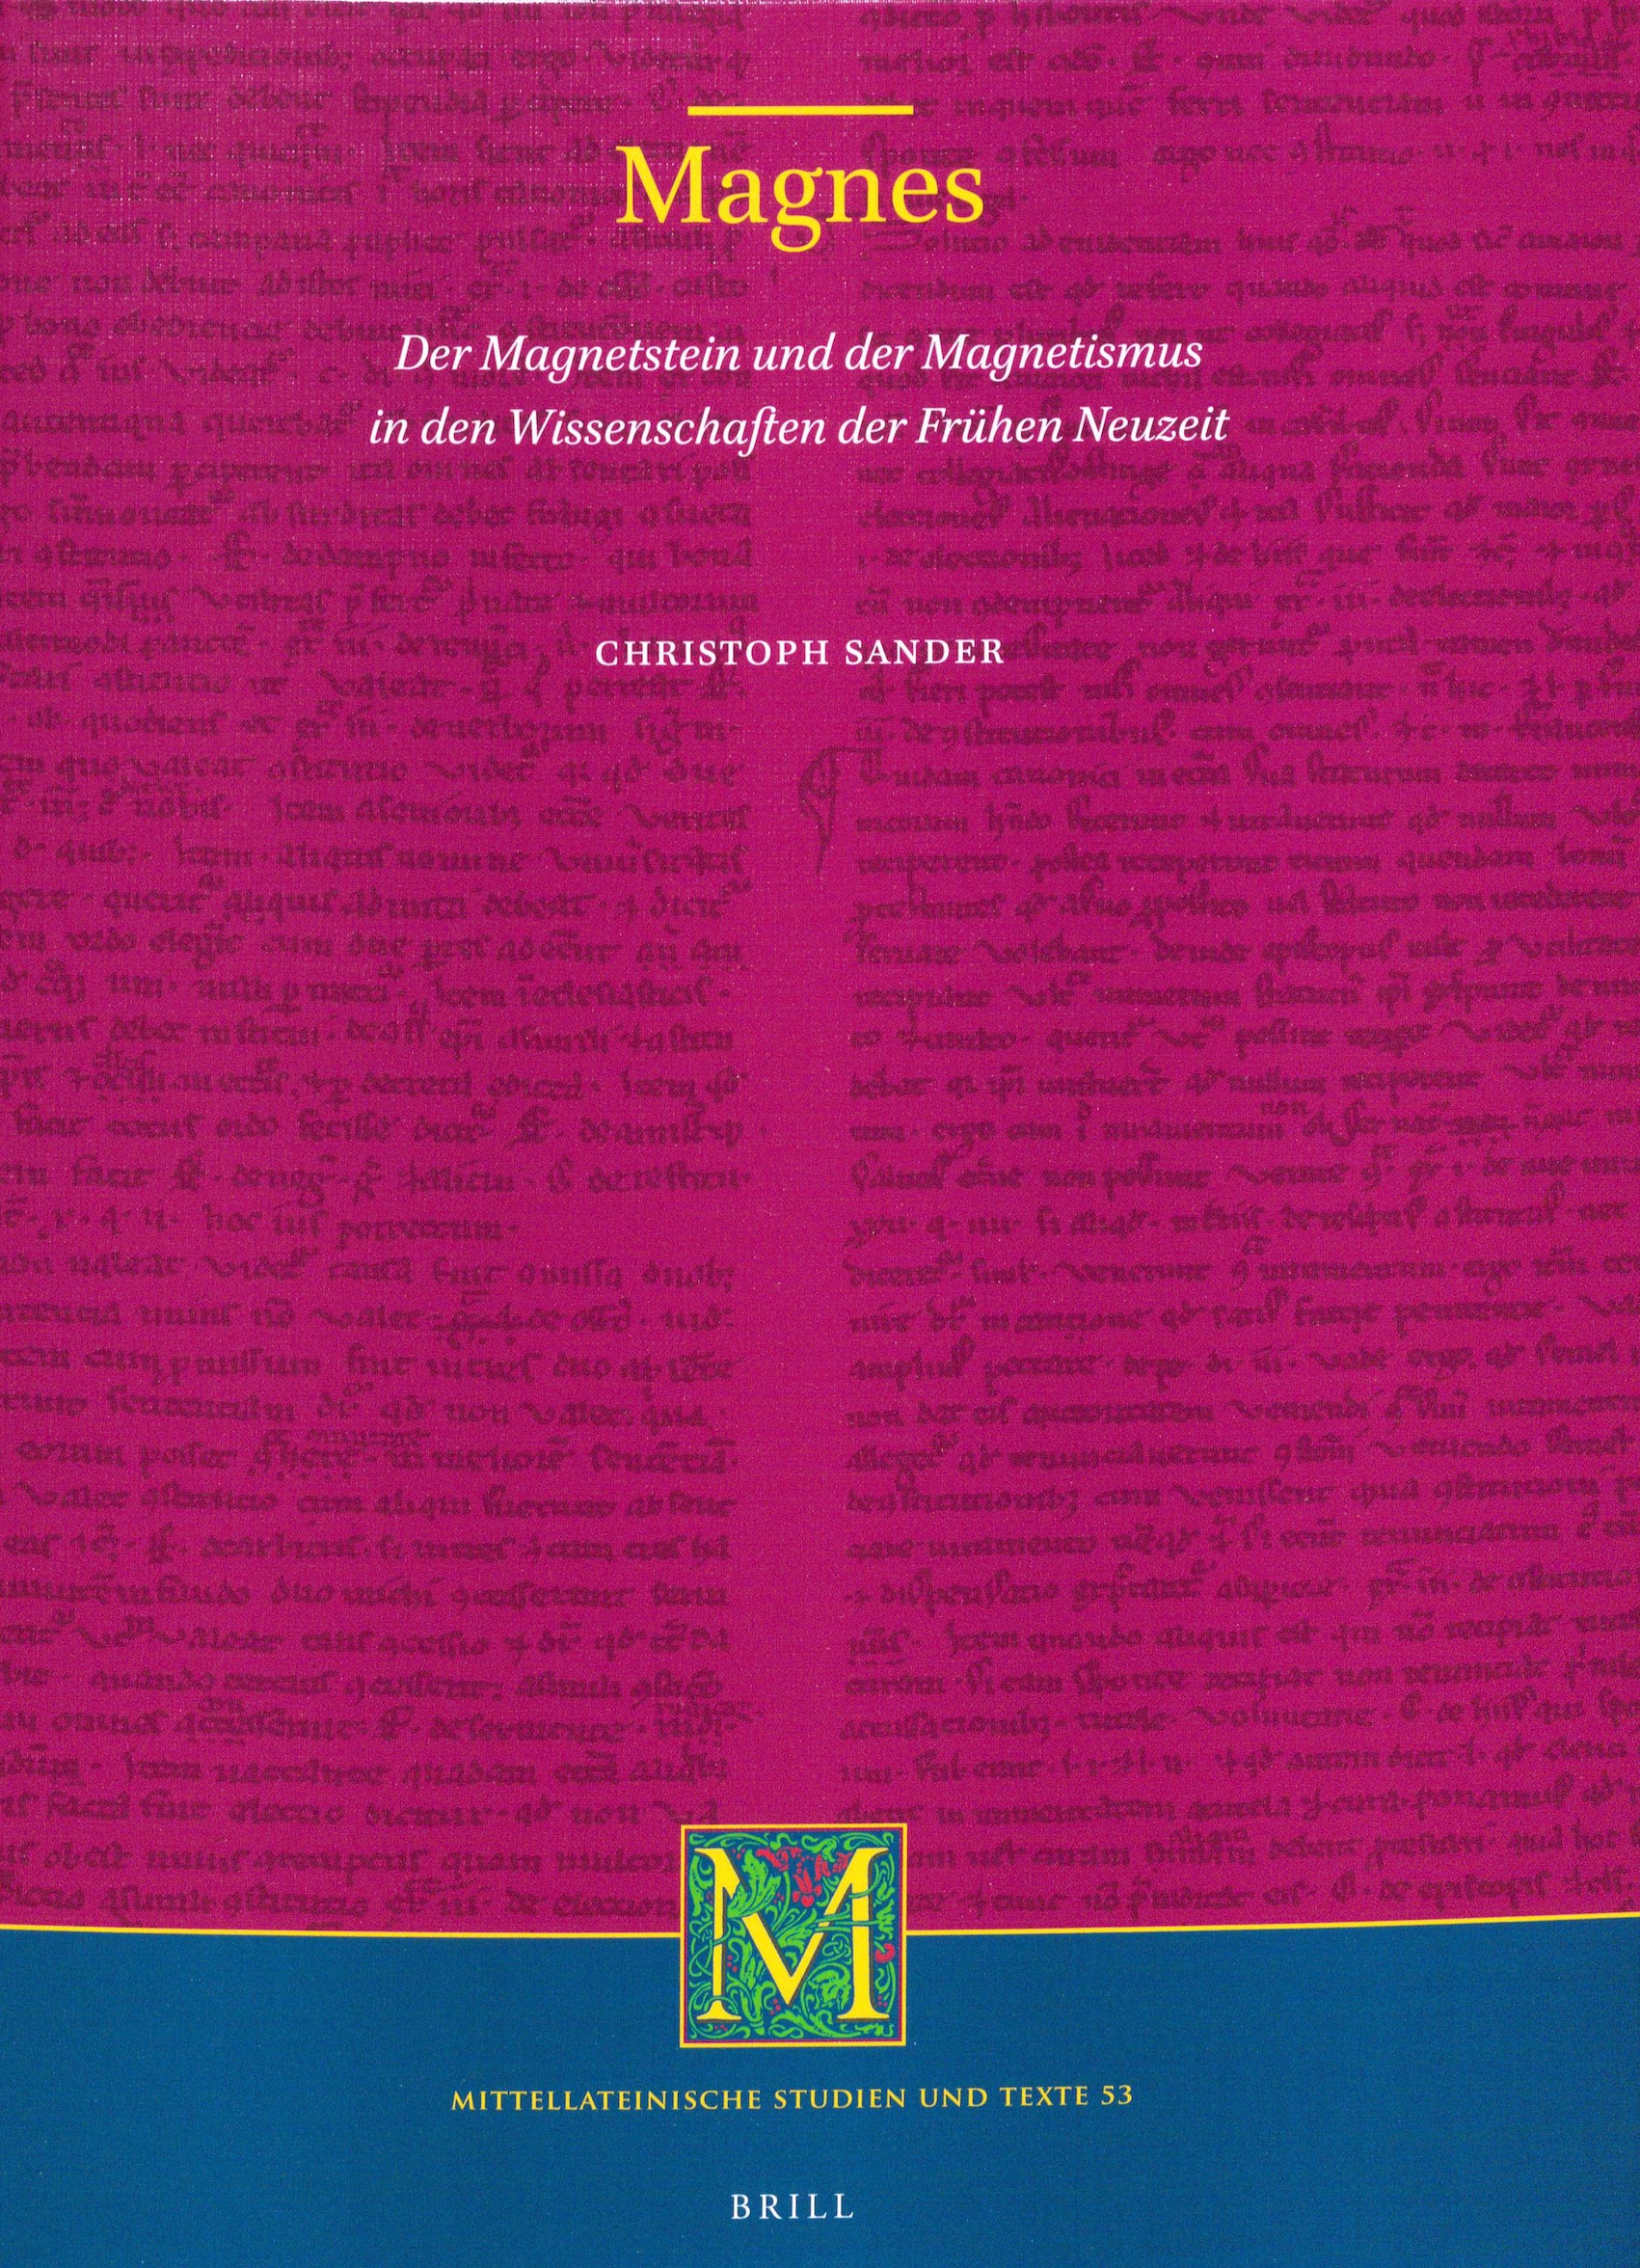 book cover: Christoph Sander: Magnes - Der Magnetstein und der Magnetismus in den Wissenschaften der Frühen Neuzeit (2020)